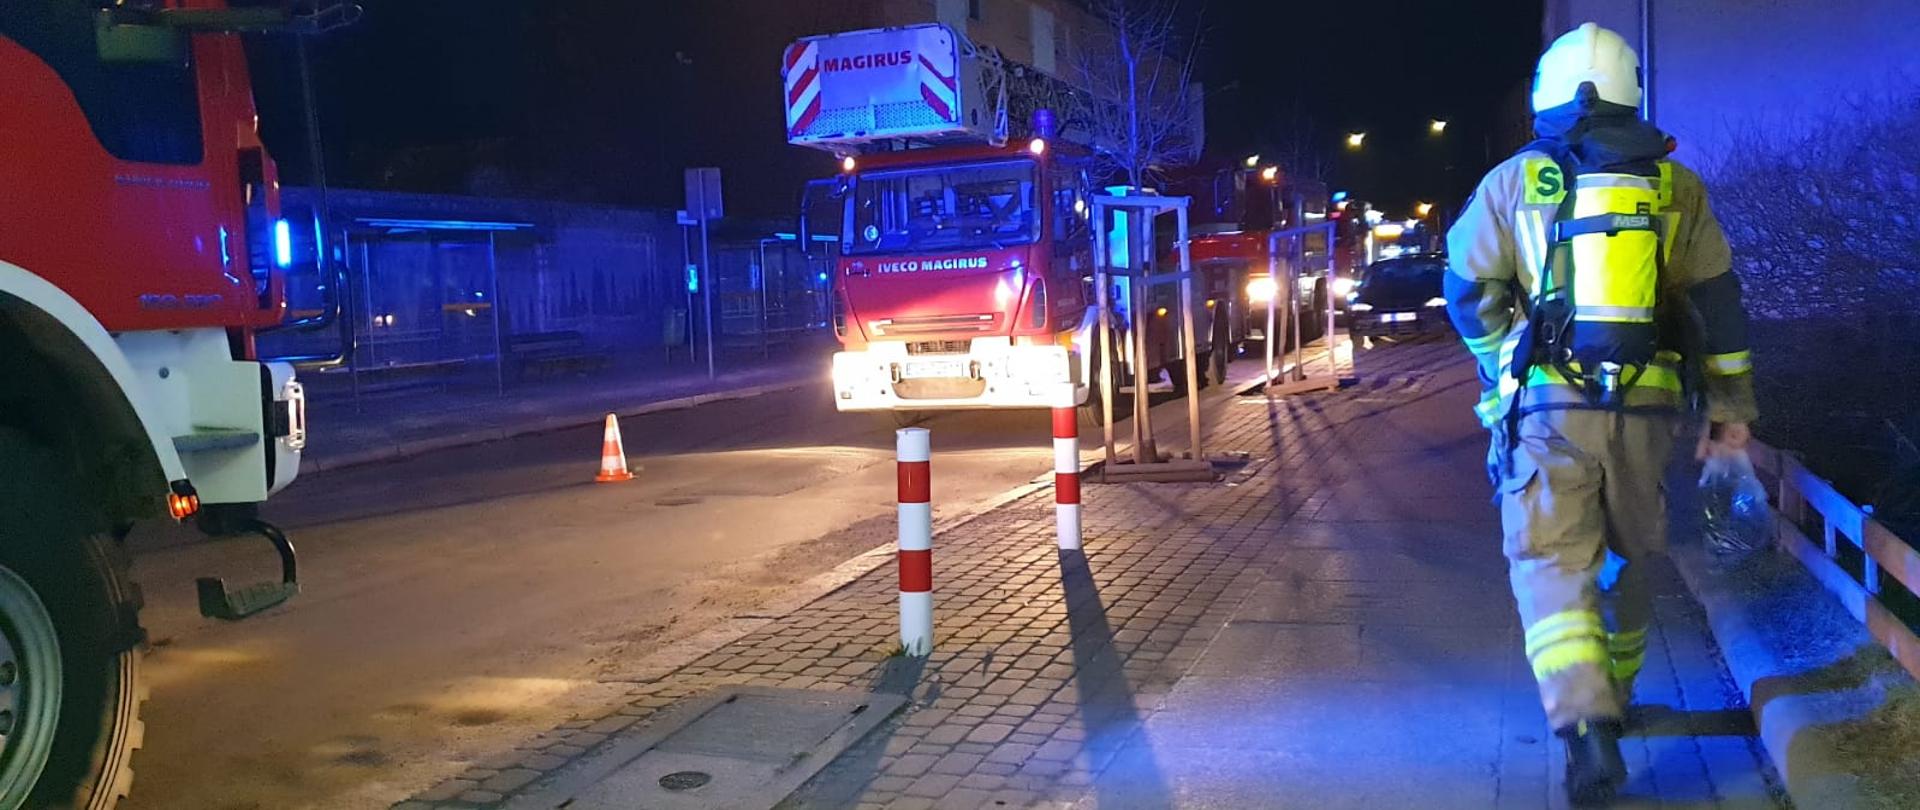 Na zdjęciu widoczne samochody pożarnicze koloru czerwonego, stojące na jezdni przy chodniku. Zdjęcie wykonane podczas działań ratowniczo-gaśniczych przy pożarze na ulicy Duboisa w Opolu. Po prawej stronie widoczny strażak OSP idący w stronę pojazdów (odwrócony plecami) w ubraniu specjalnym koloru piaskowego, białym hełmie na głowie oraz aparacie powietrznym na plecach. 